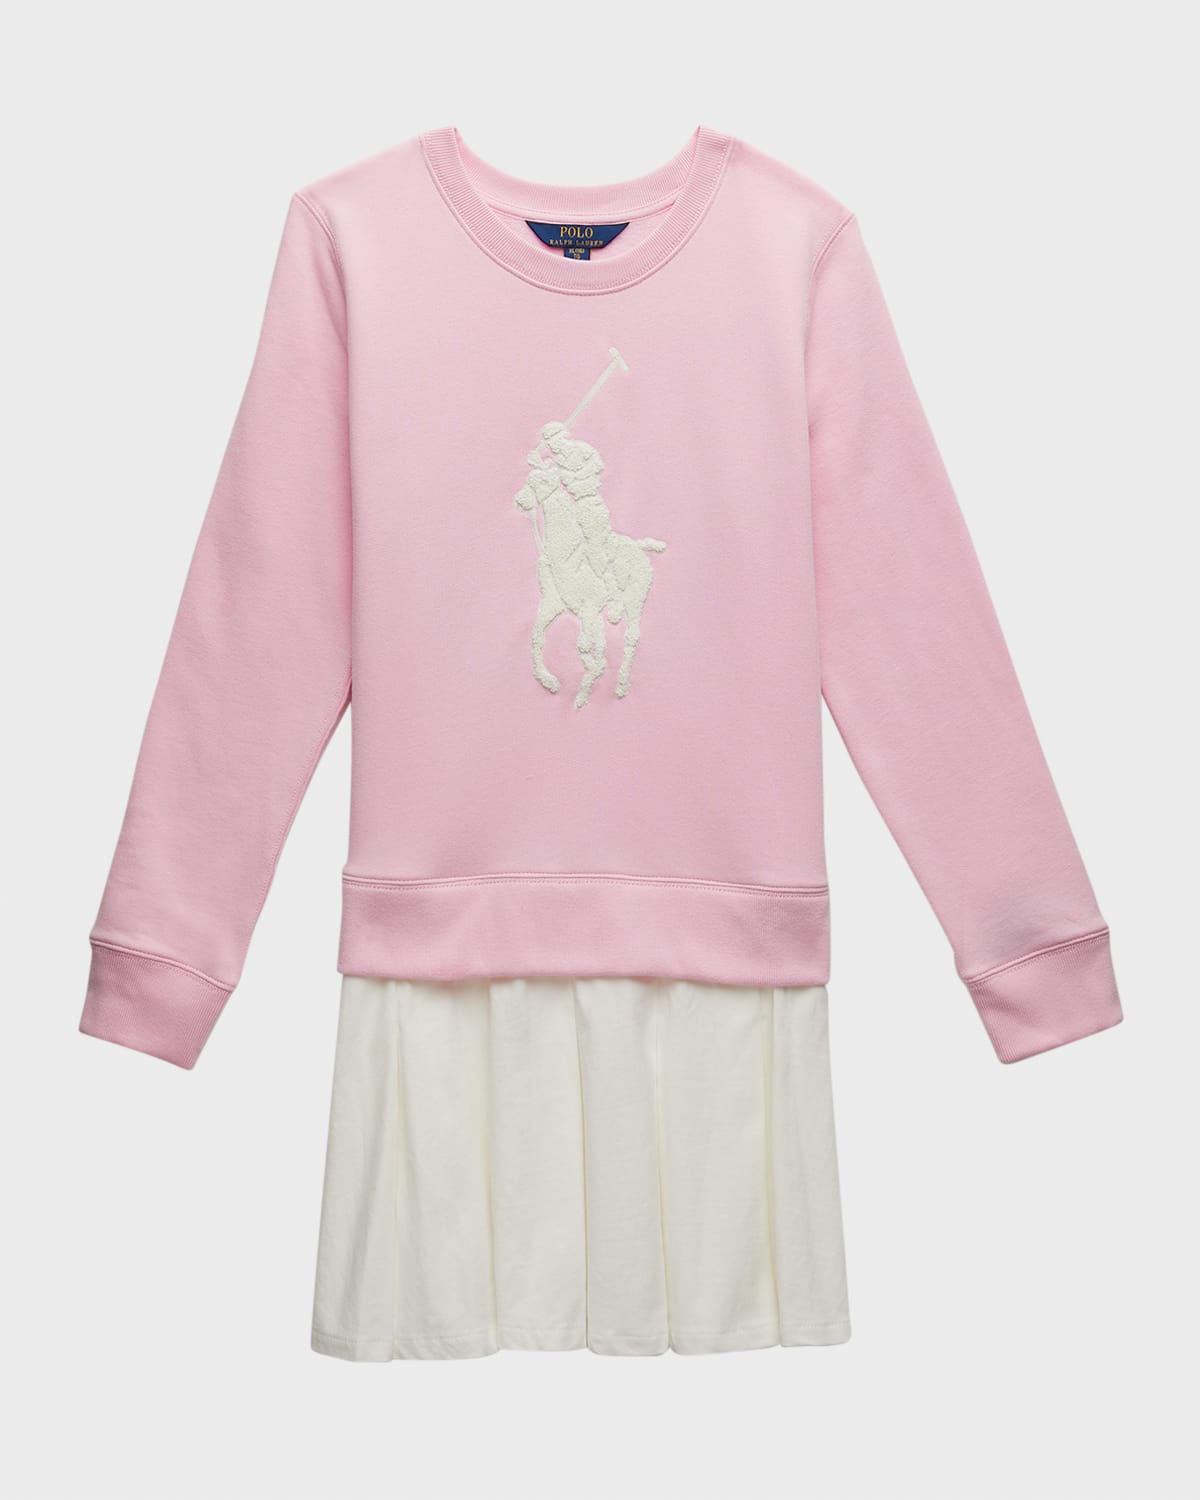 Girl's Big Pony Fleece Sweatshirt Dress, Size S-XL